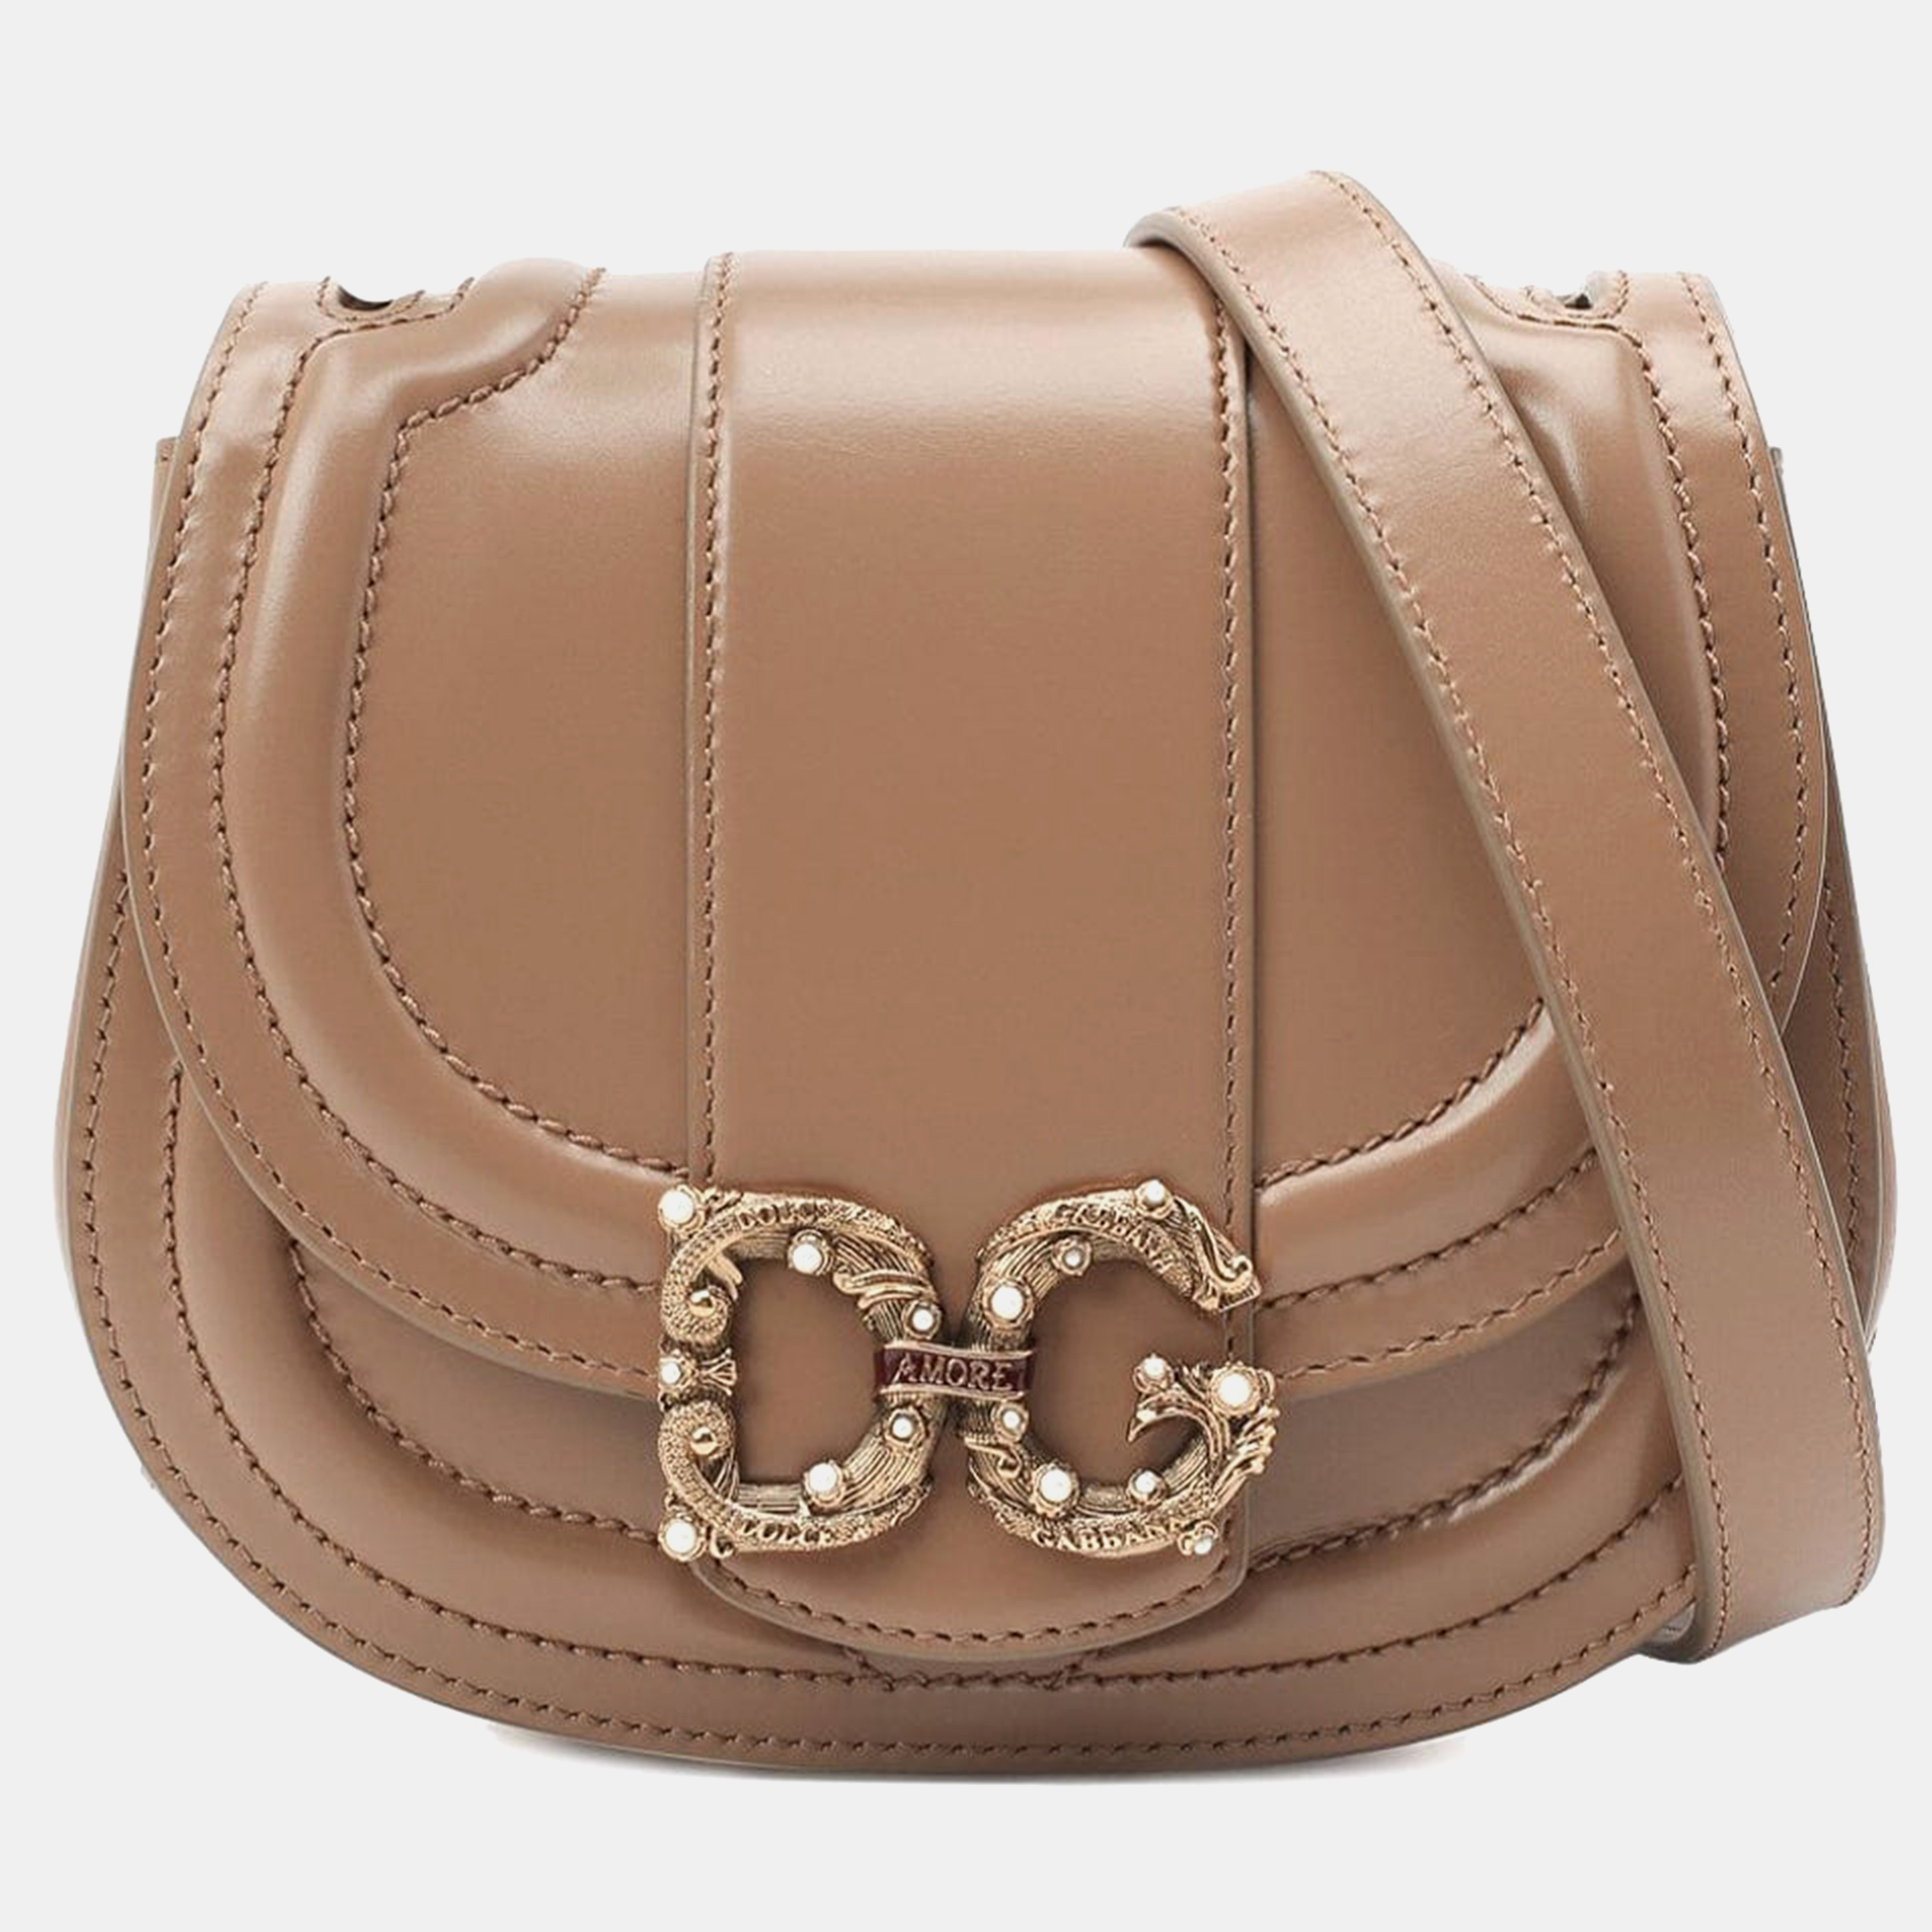 Dolce & Gabbana Desert  Leather  Small DG Amore Messanger Bag